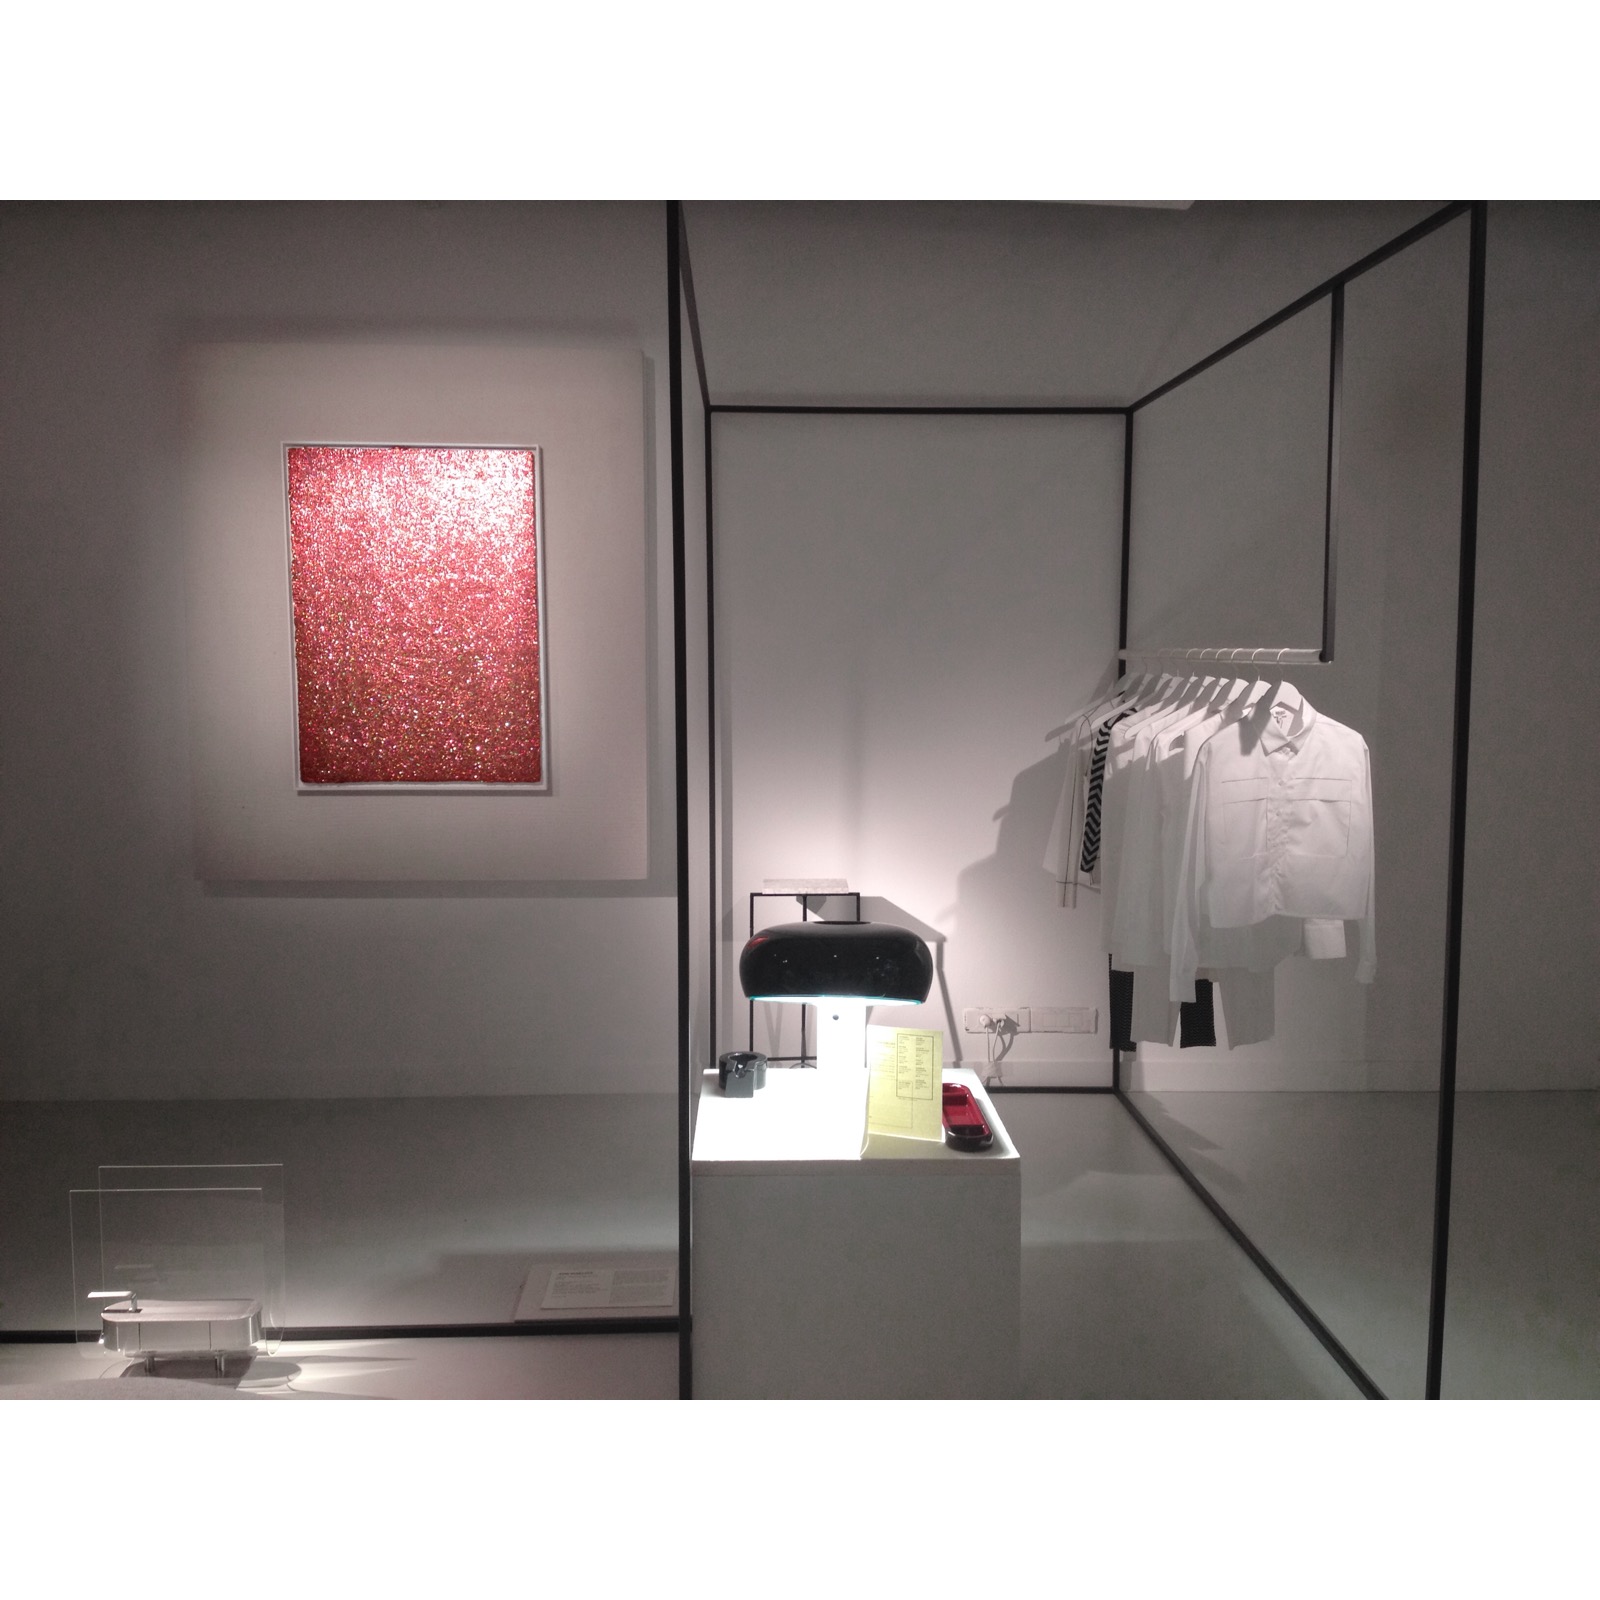 2015 06 09 19.08.56 L'exposition "Idées multiples" à La Galerie des Galeries